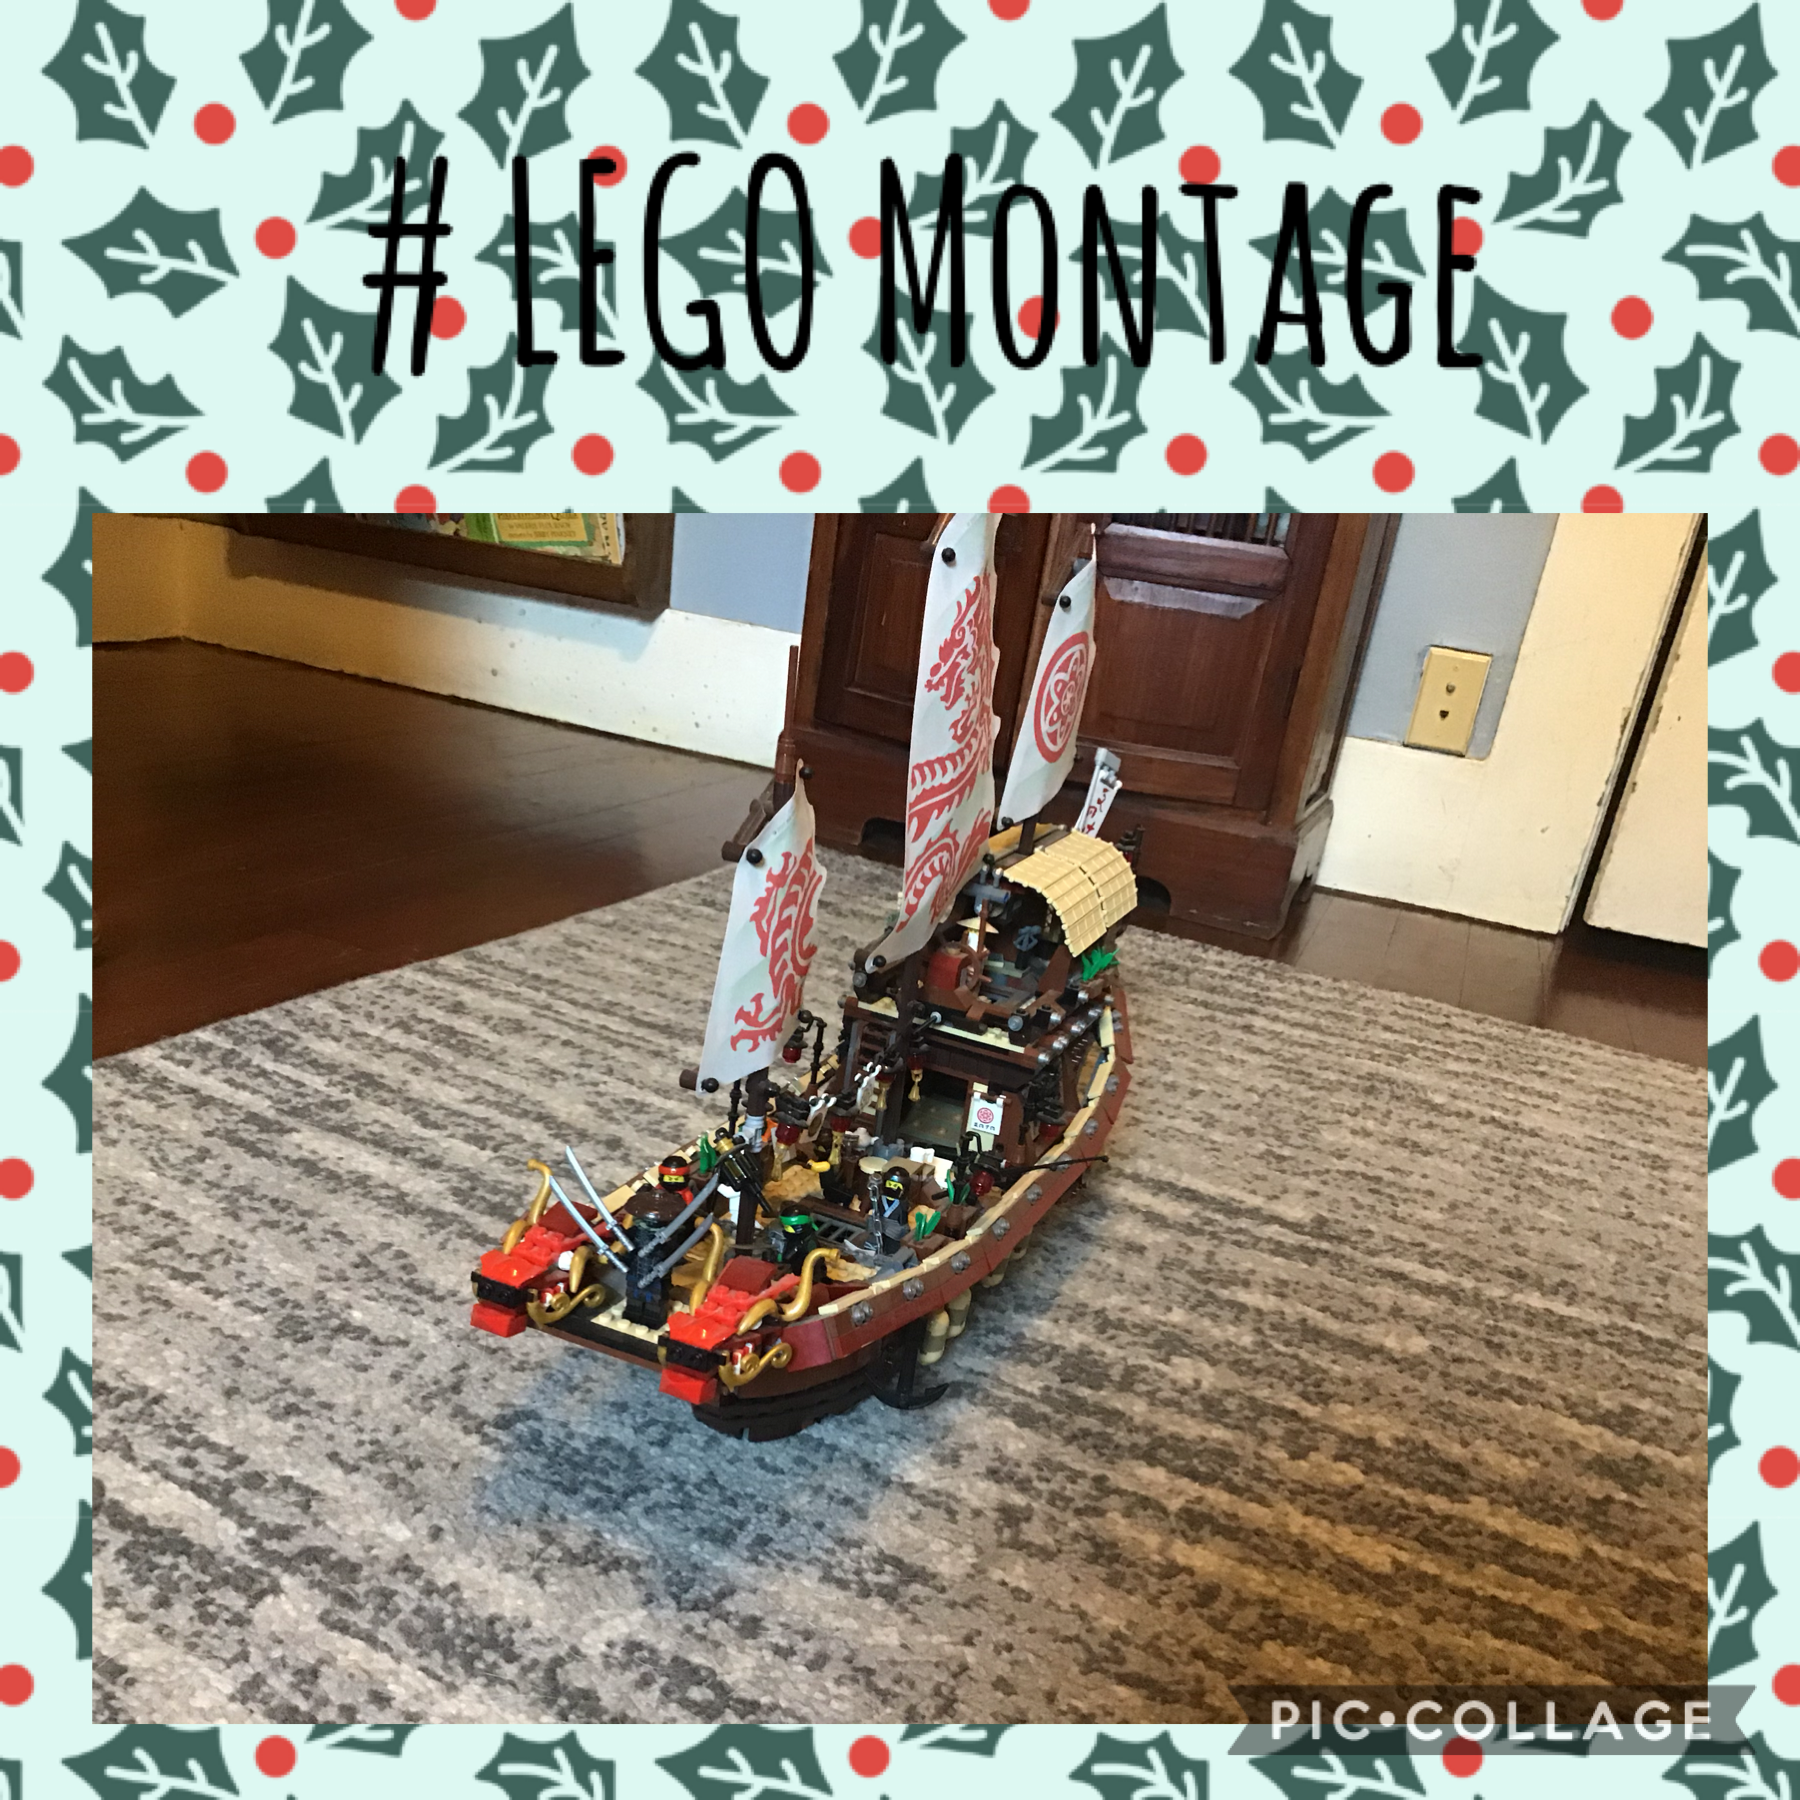 # LEGO Montage